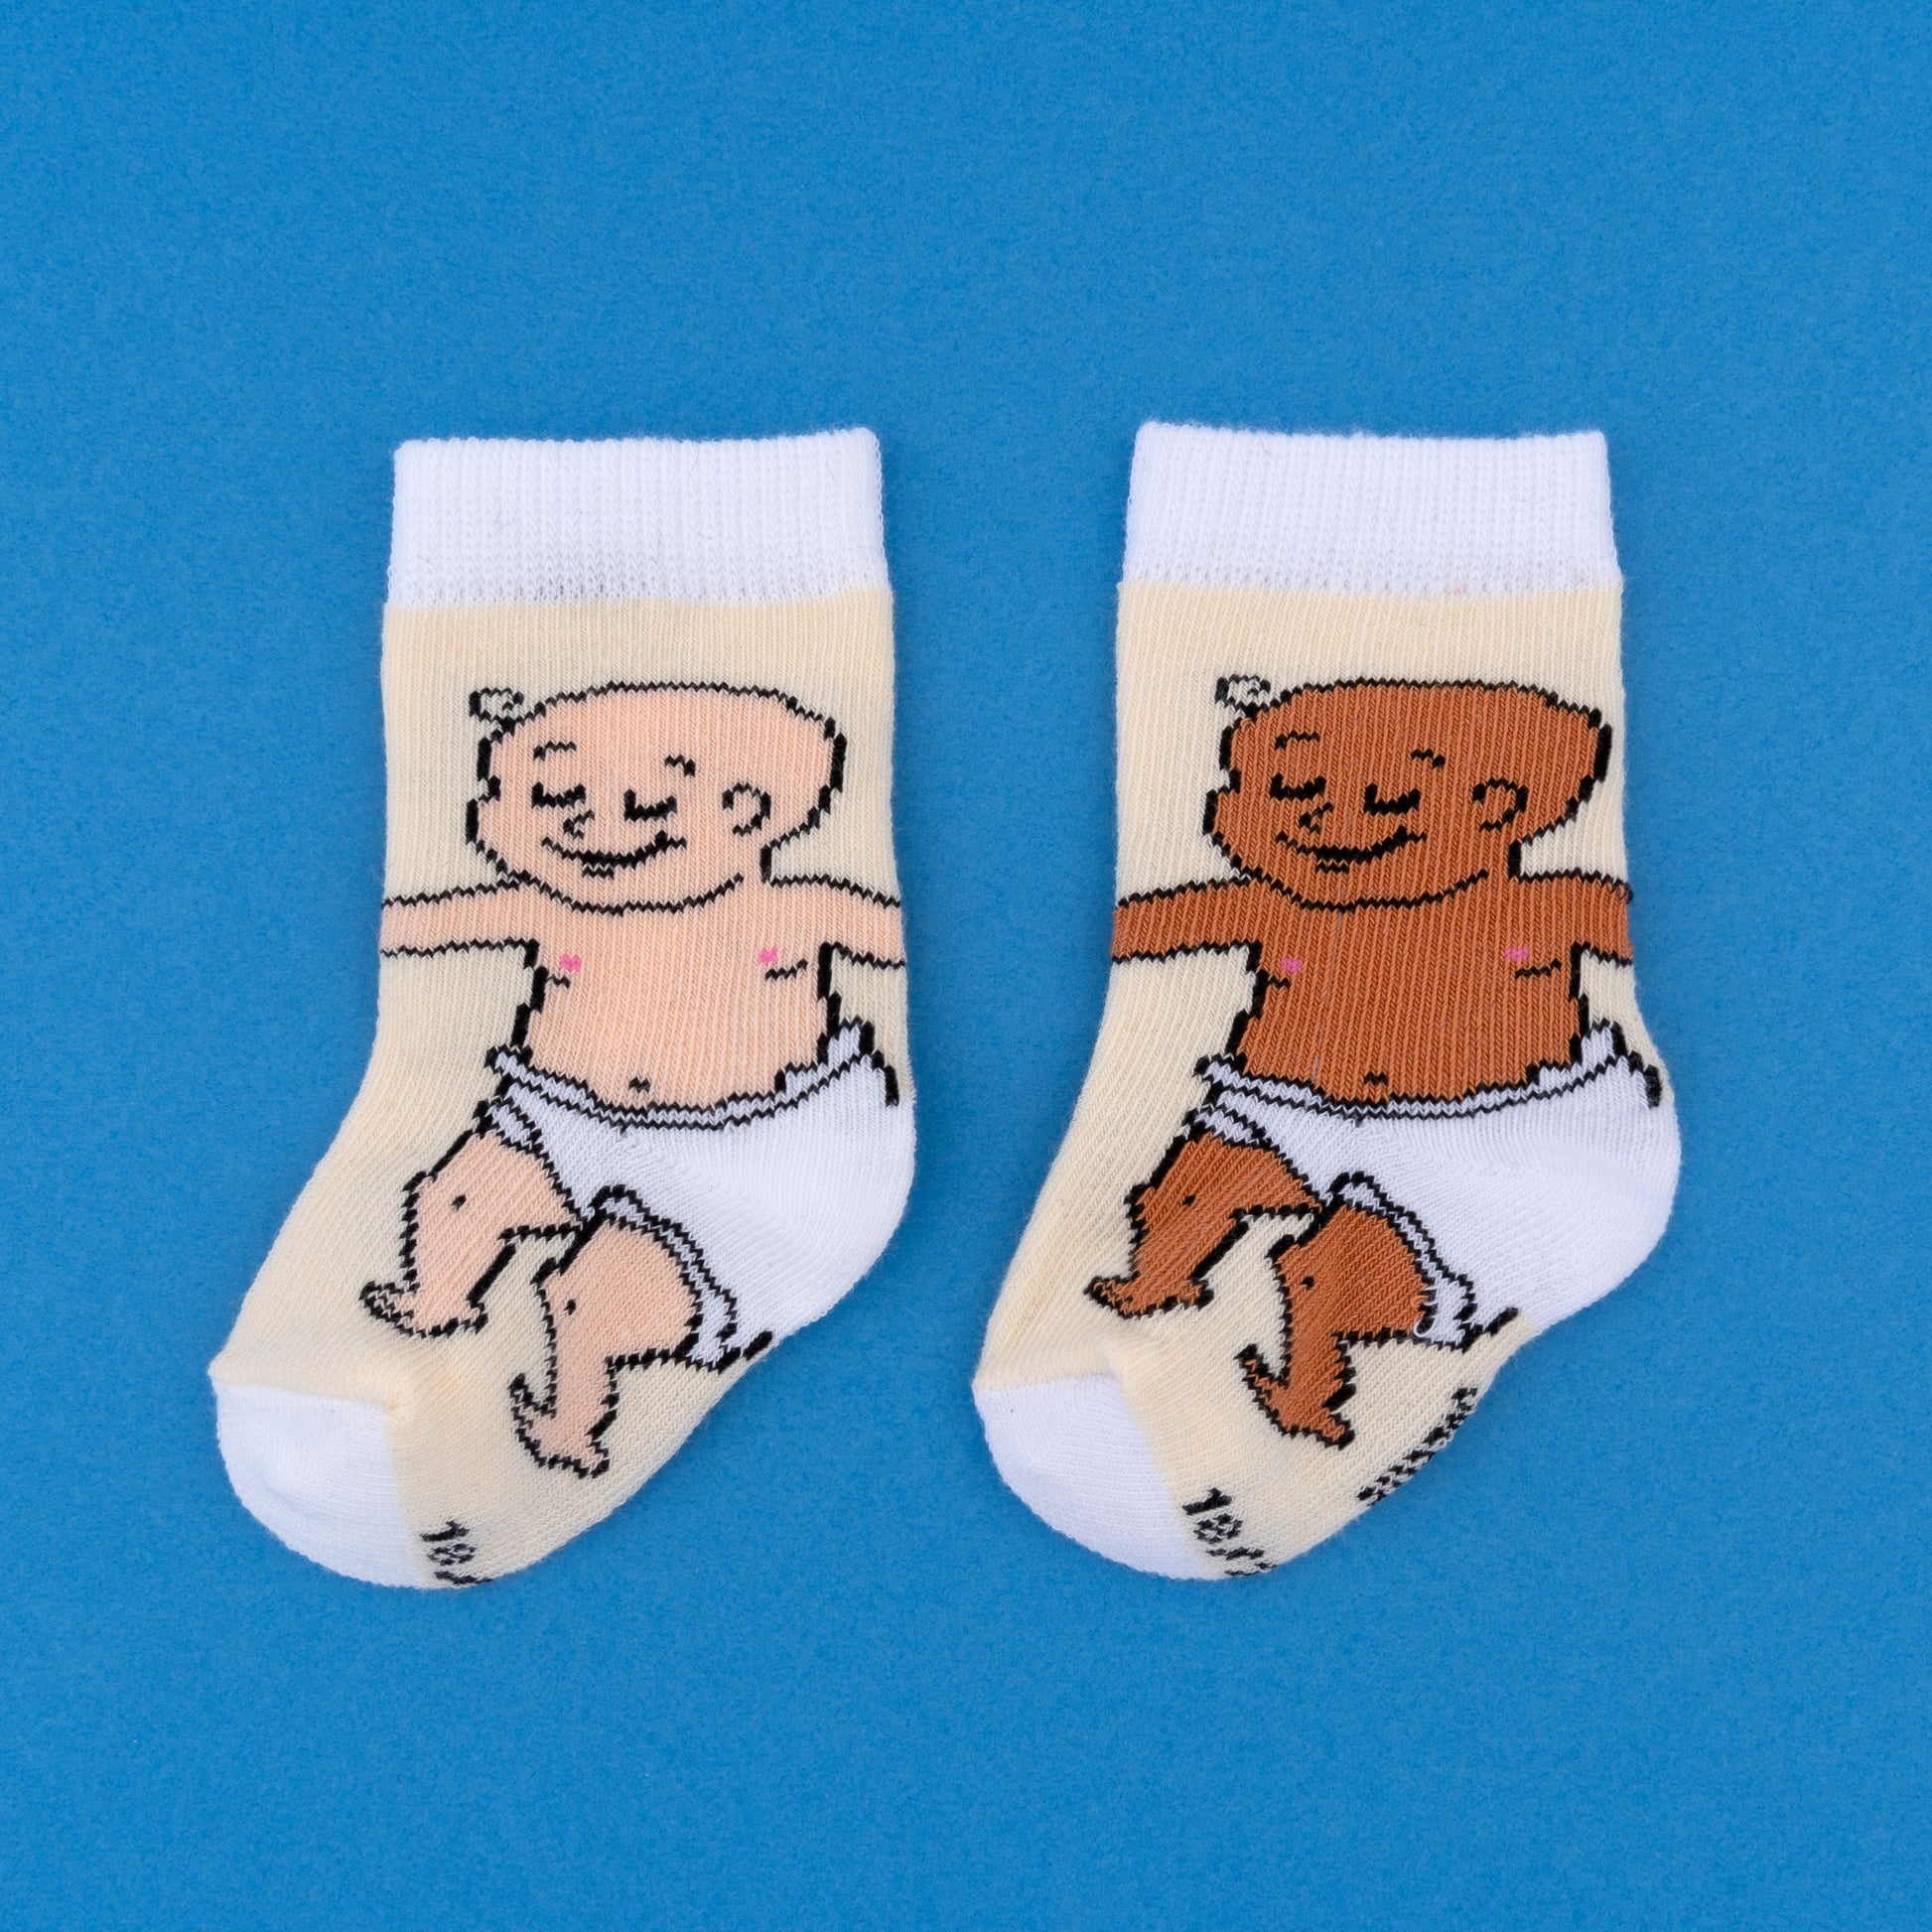 Chaussettes pour bébé tout-petit collants doux mignon cartoon bébé  chaussettes